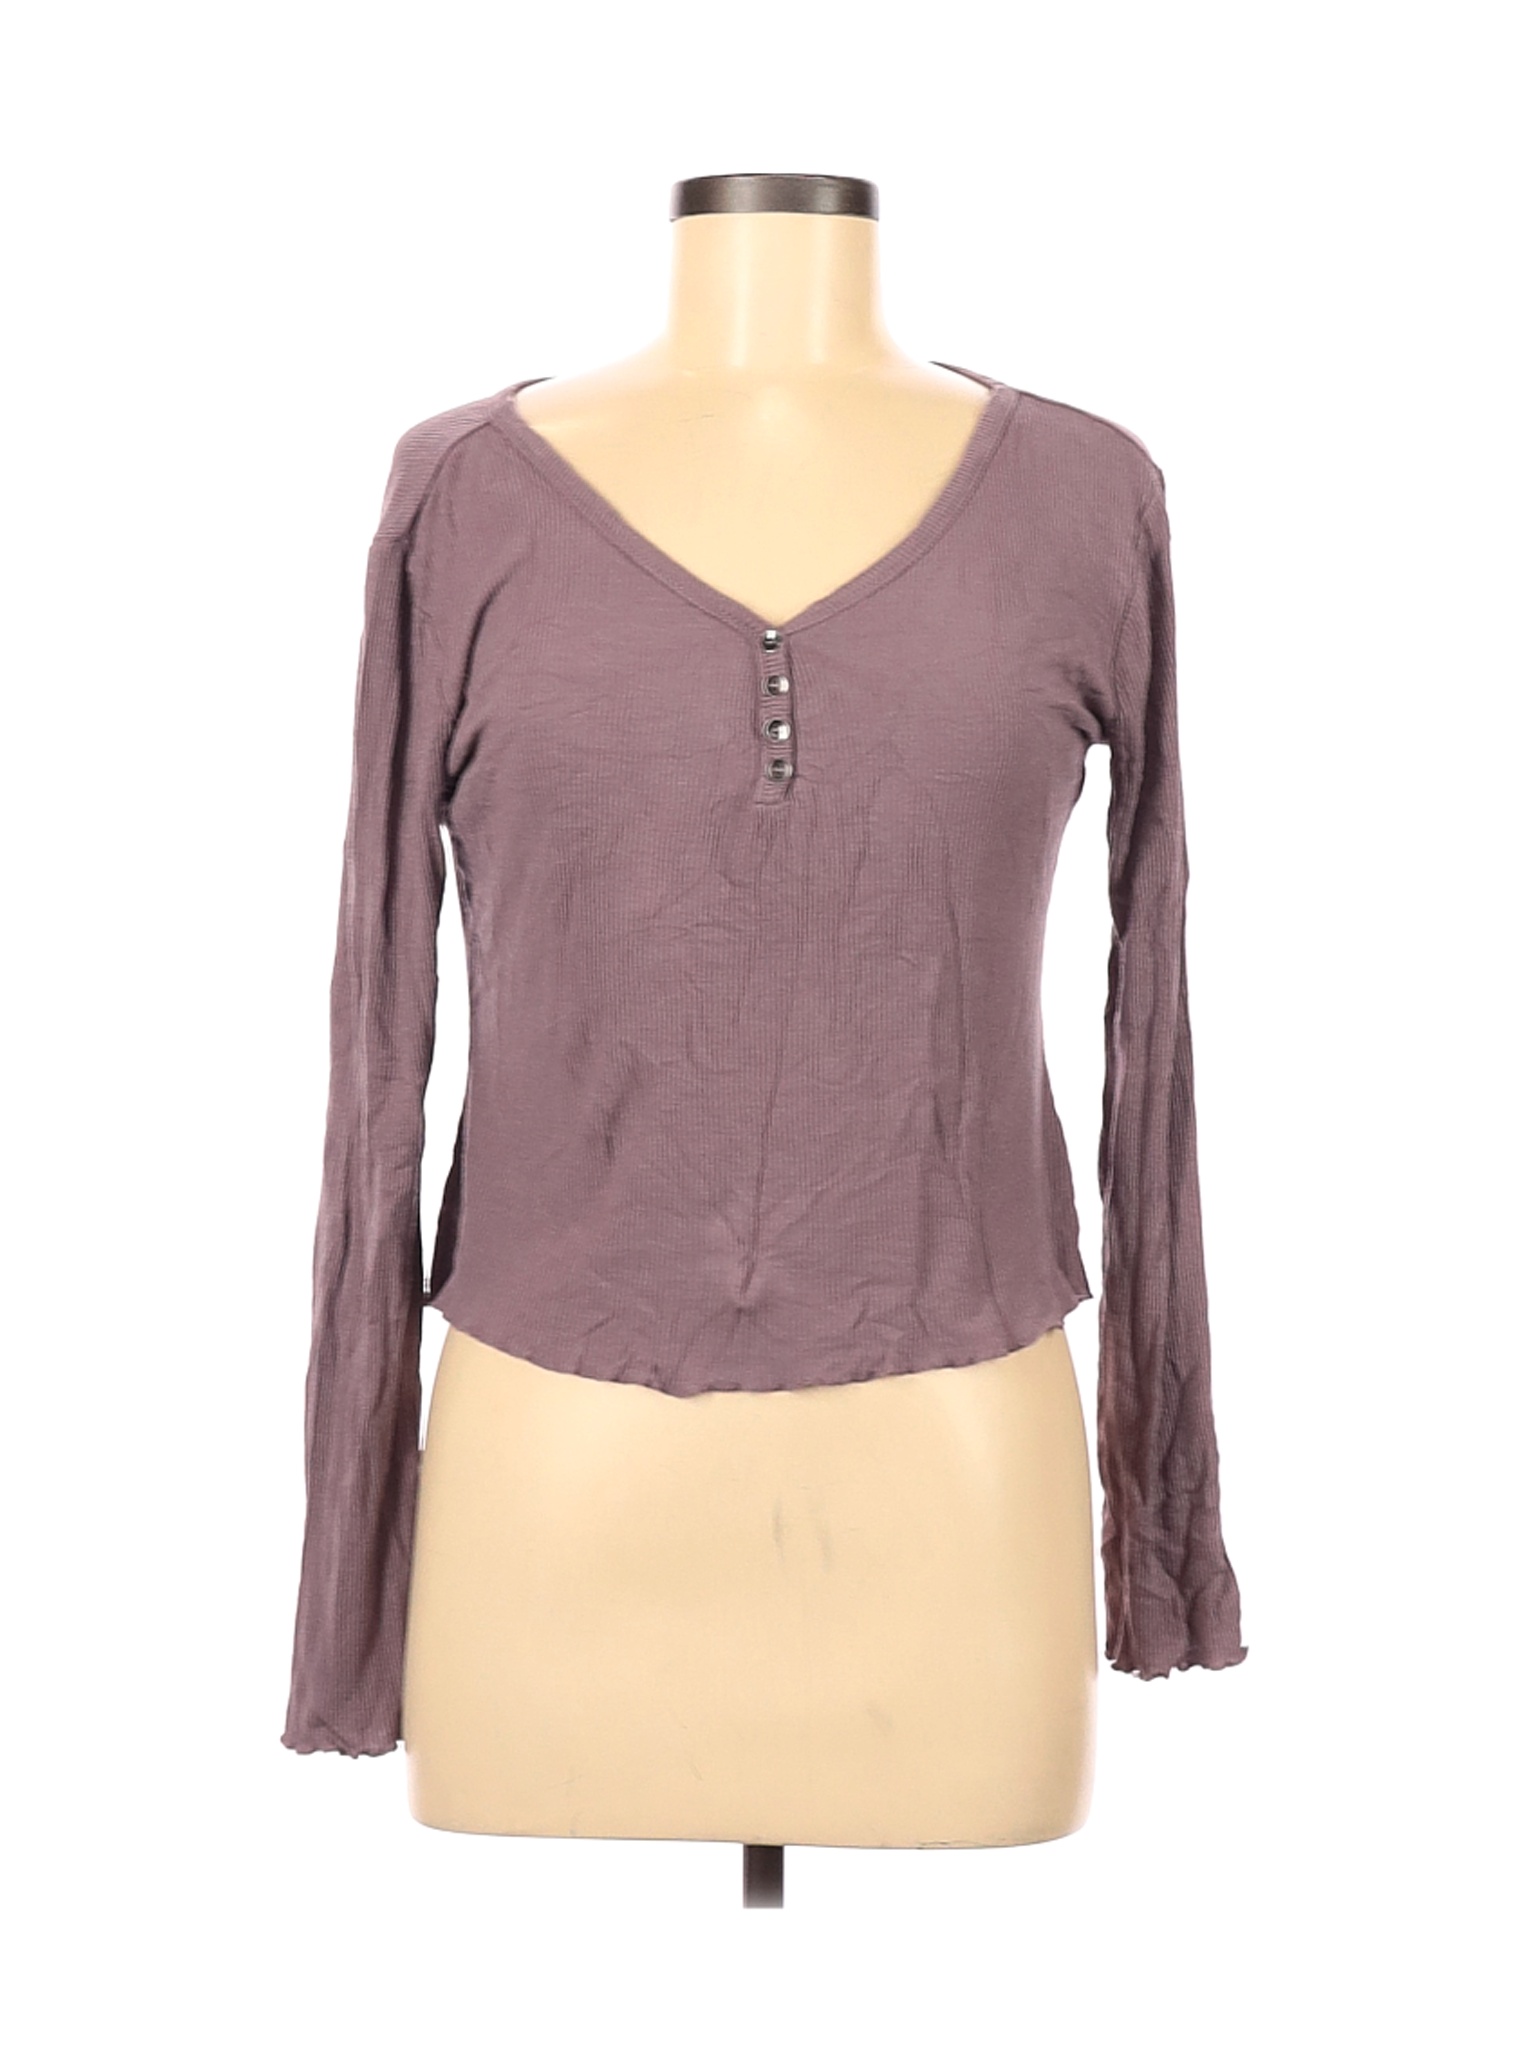 SO Women Purple Long Sleeve Henley M | eBay